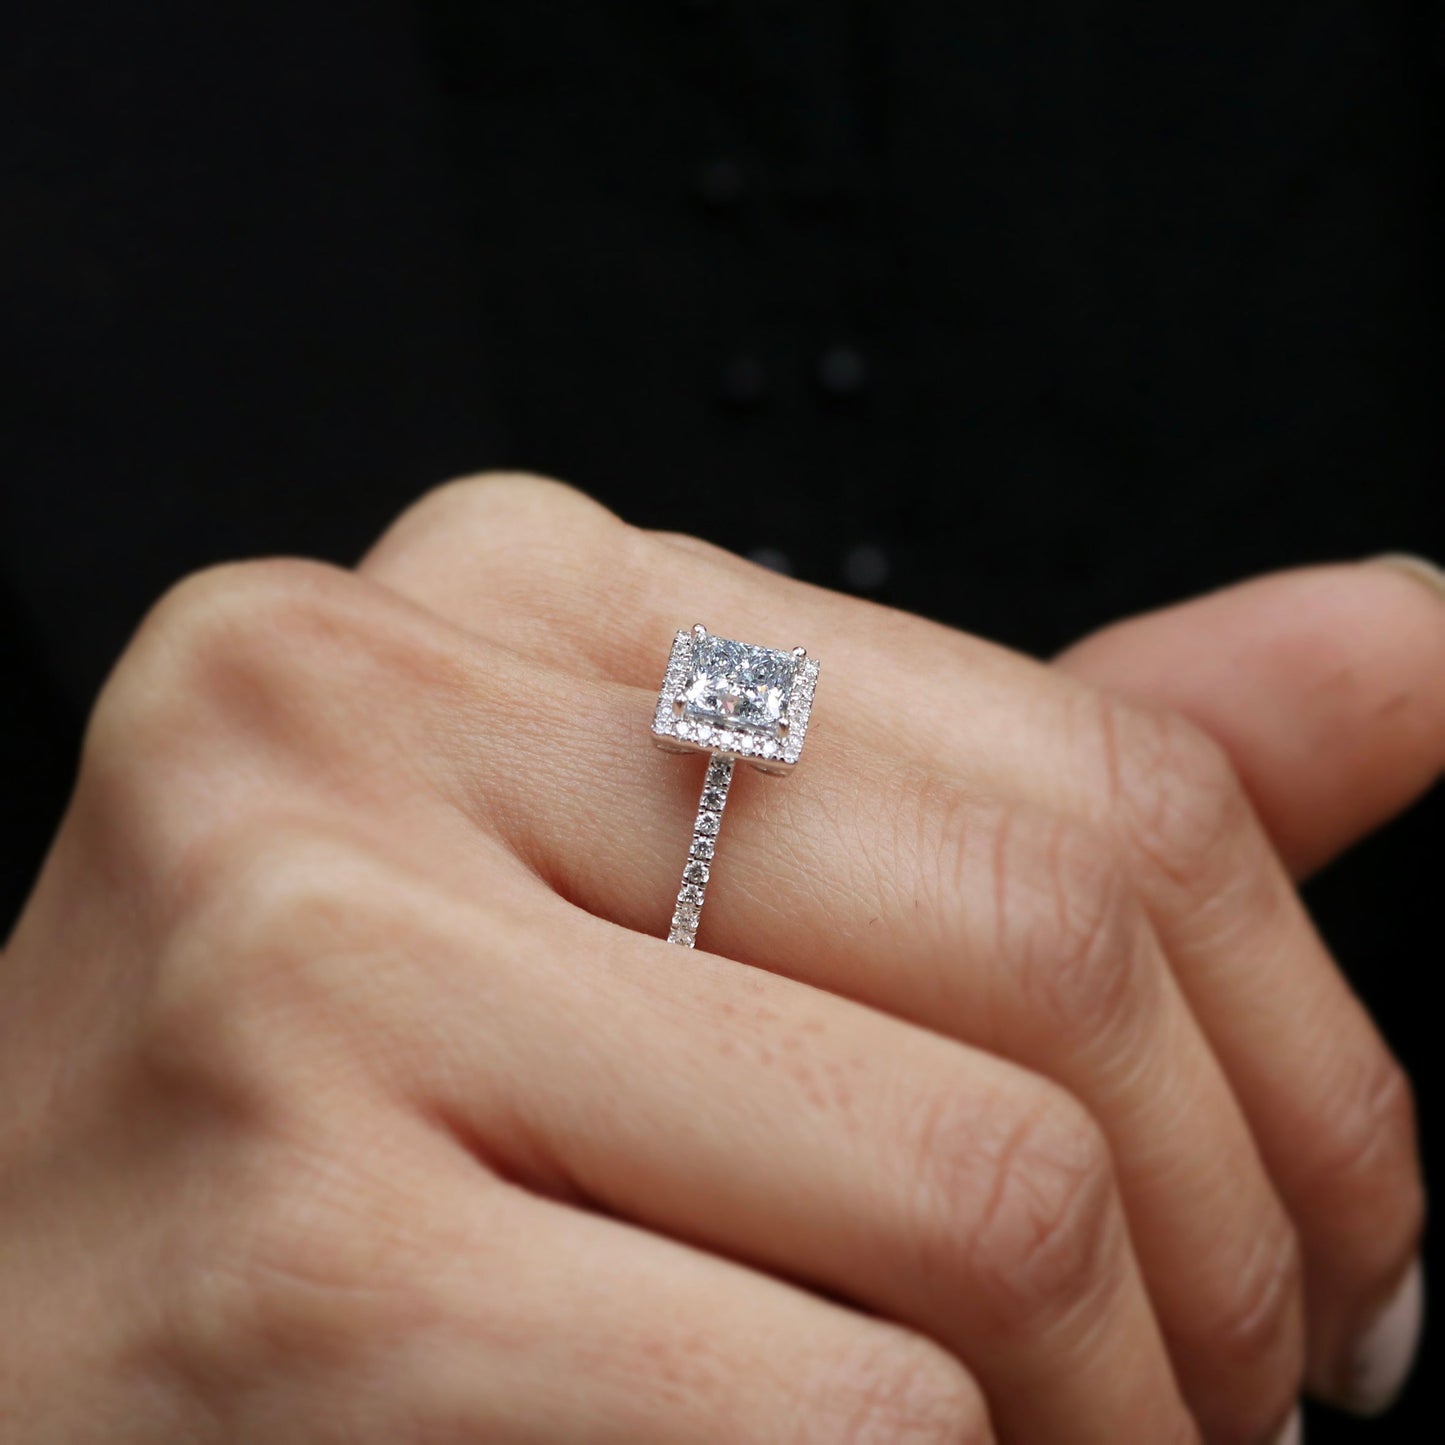 Load image into Gallery viewer, Iris Lab Grown Diamond Ring - Fiona Diamonds - Fiona Diamonds
